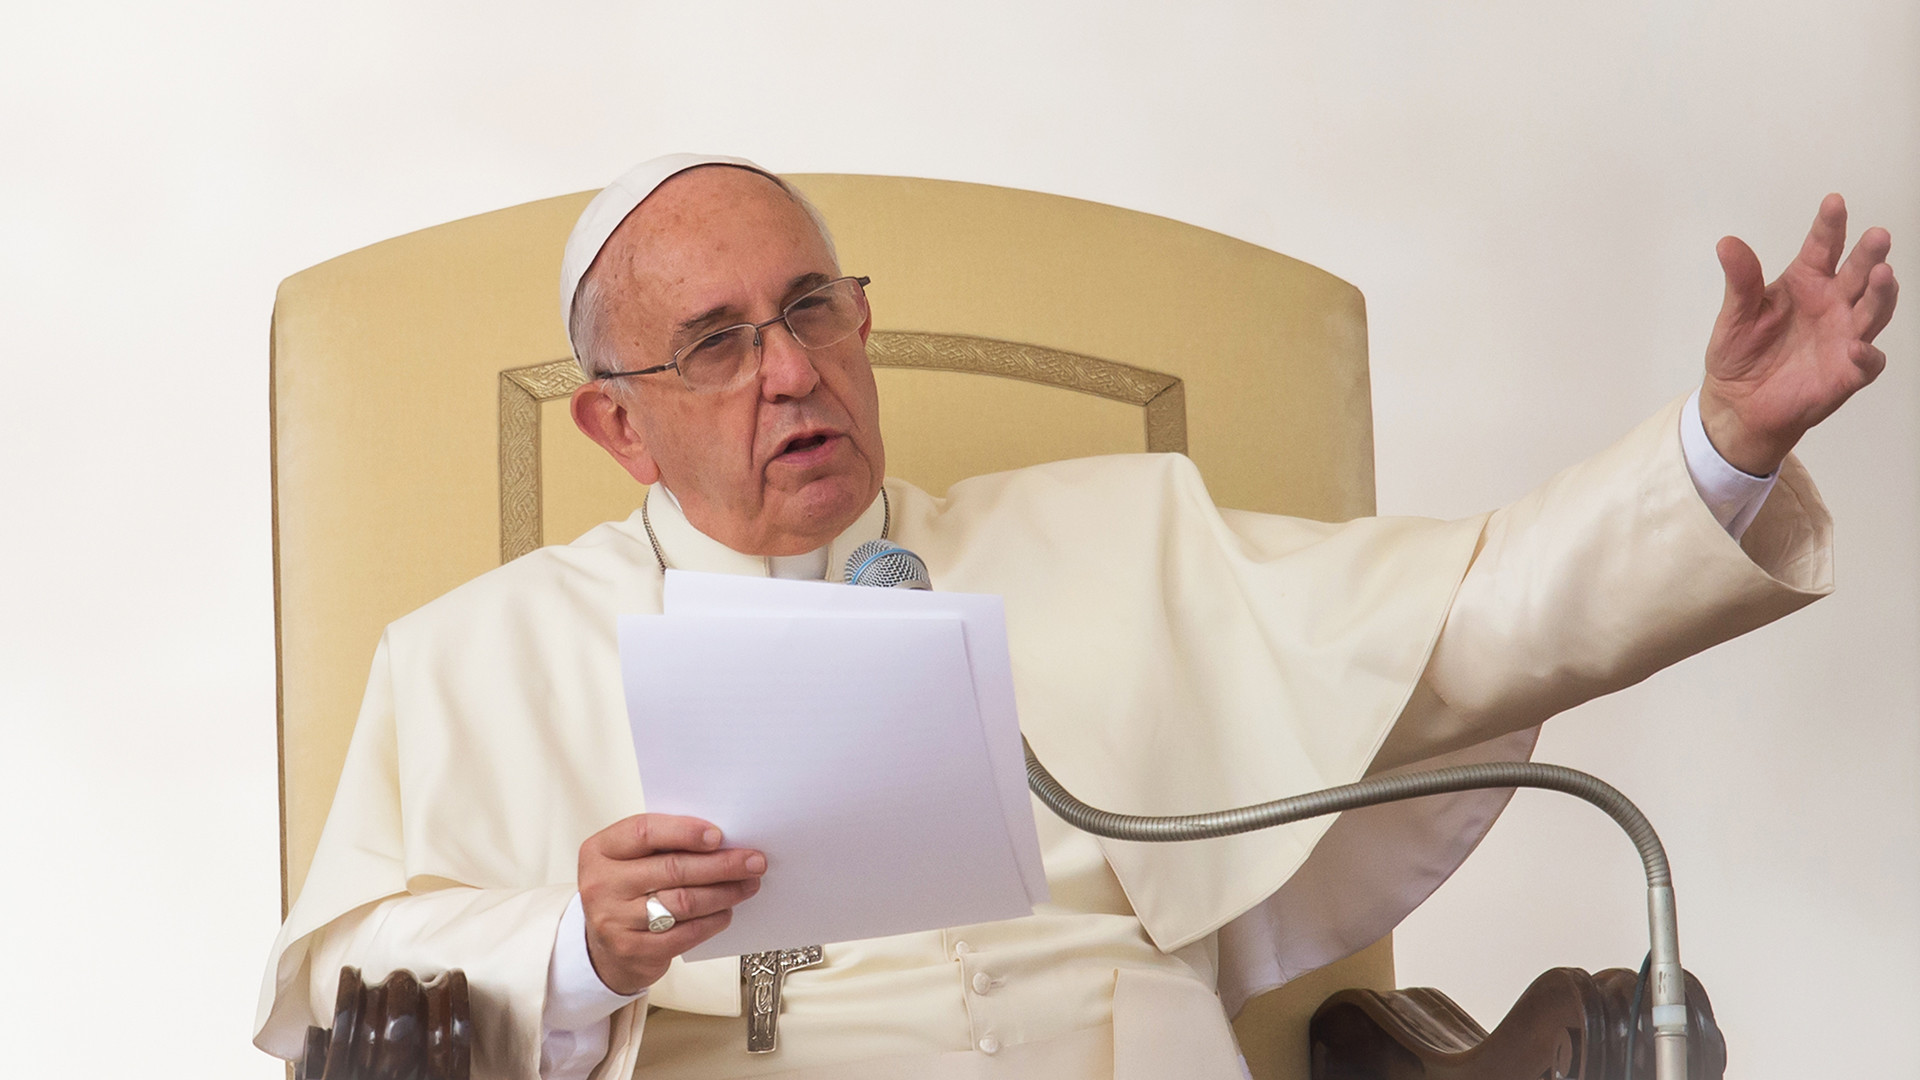 Le pape François continue ses réformes au sein du Vatican. | © Flickr - Catholic church - CC BY-NC-SA 2.0